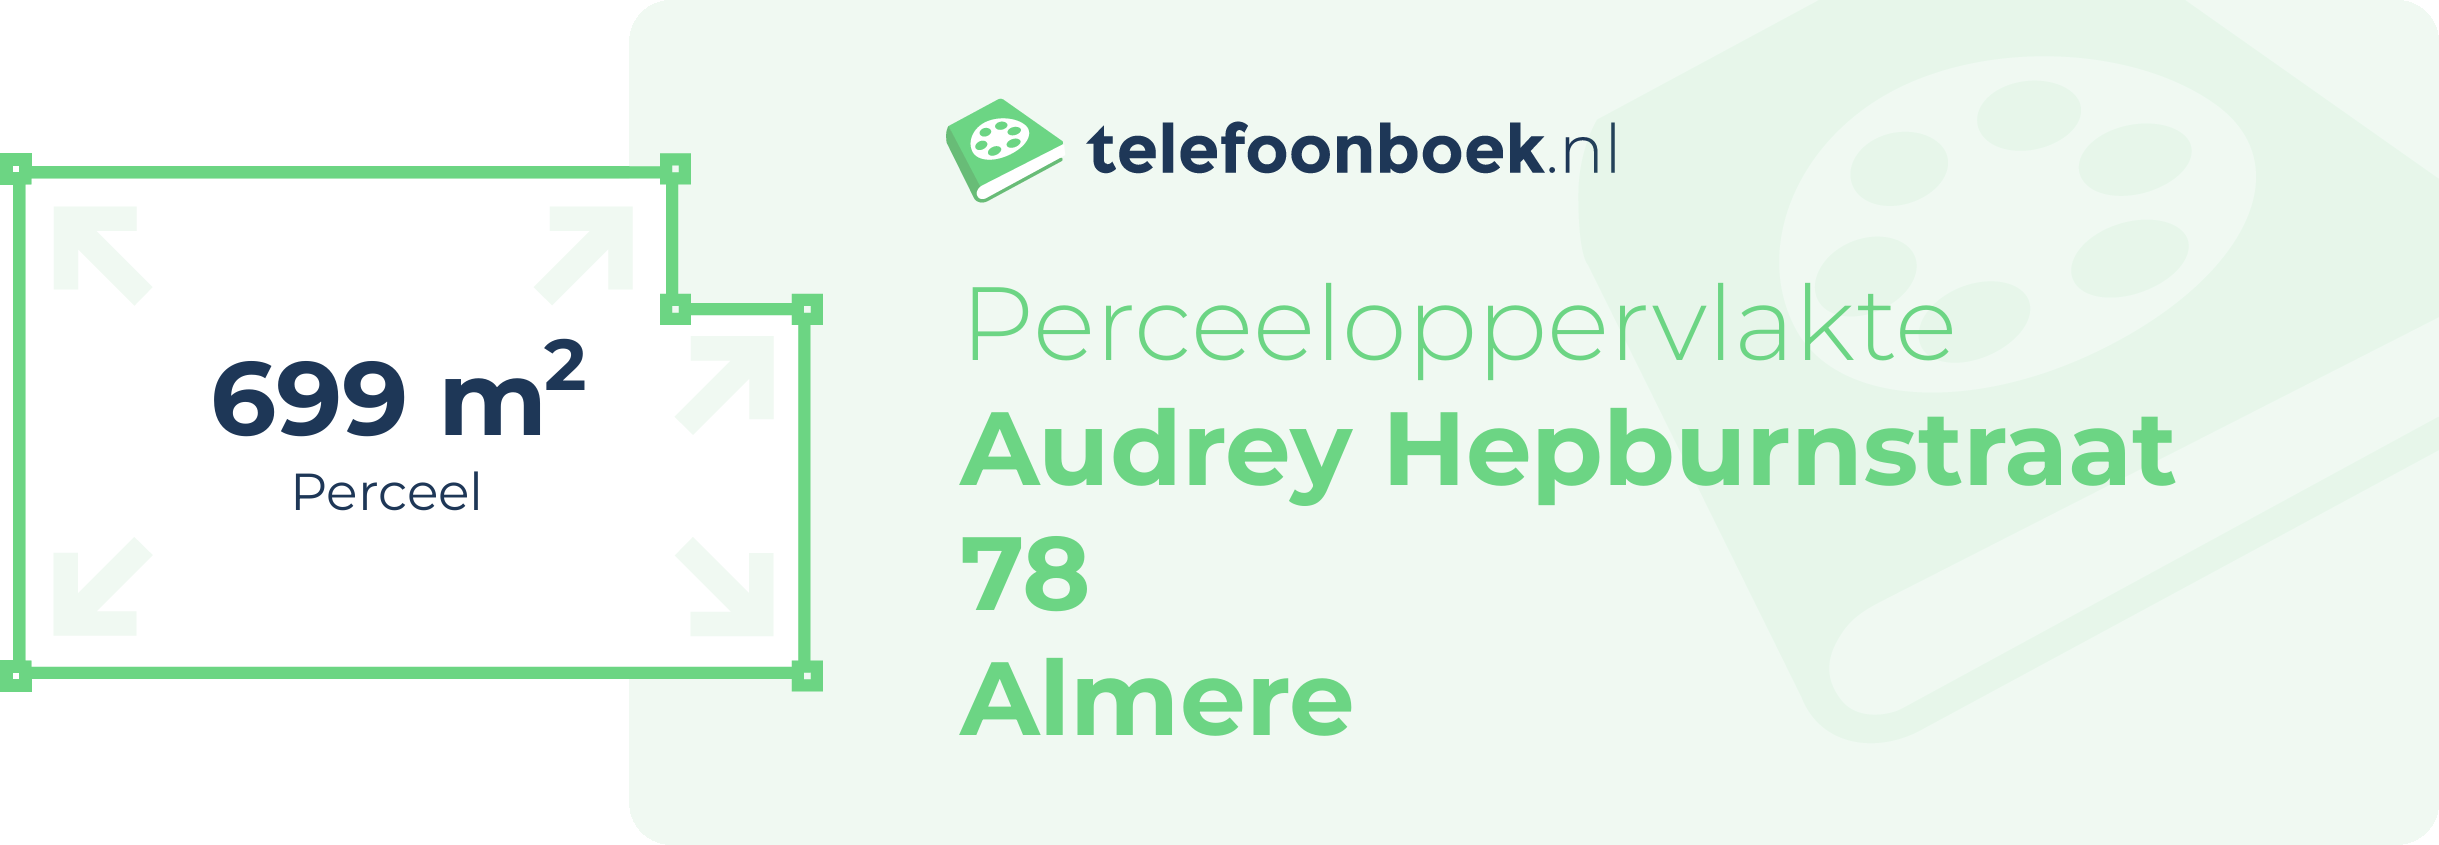 Perceeloppervlakte Audrey Hepburnstraat 78 Almere